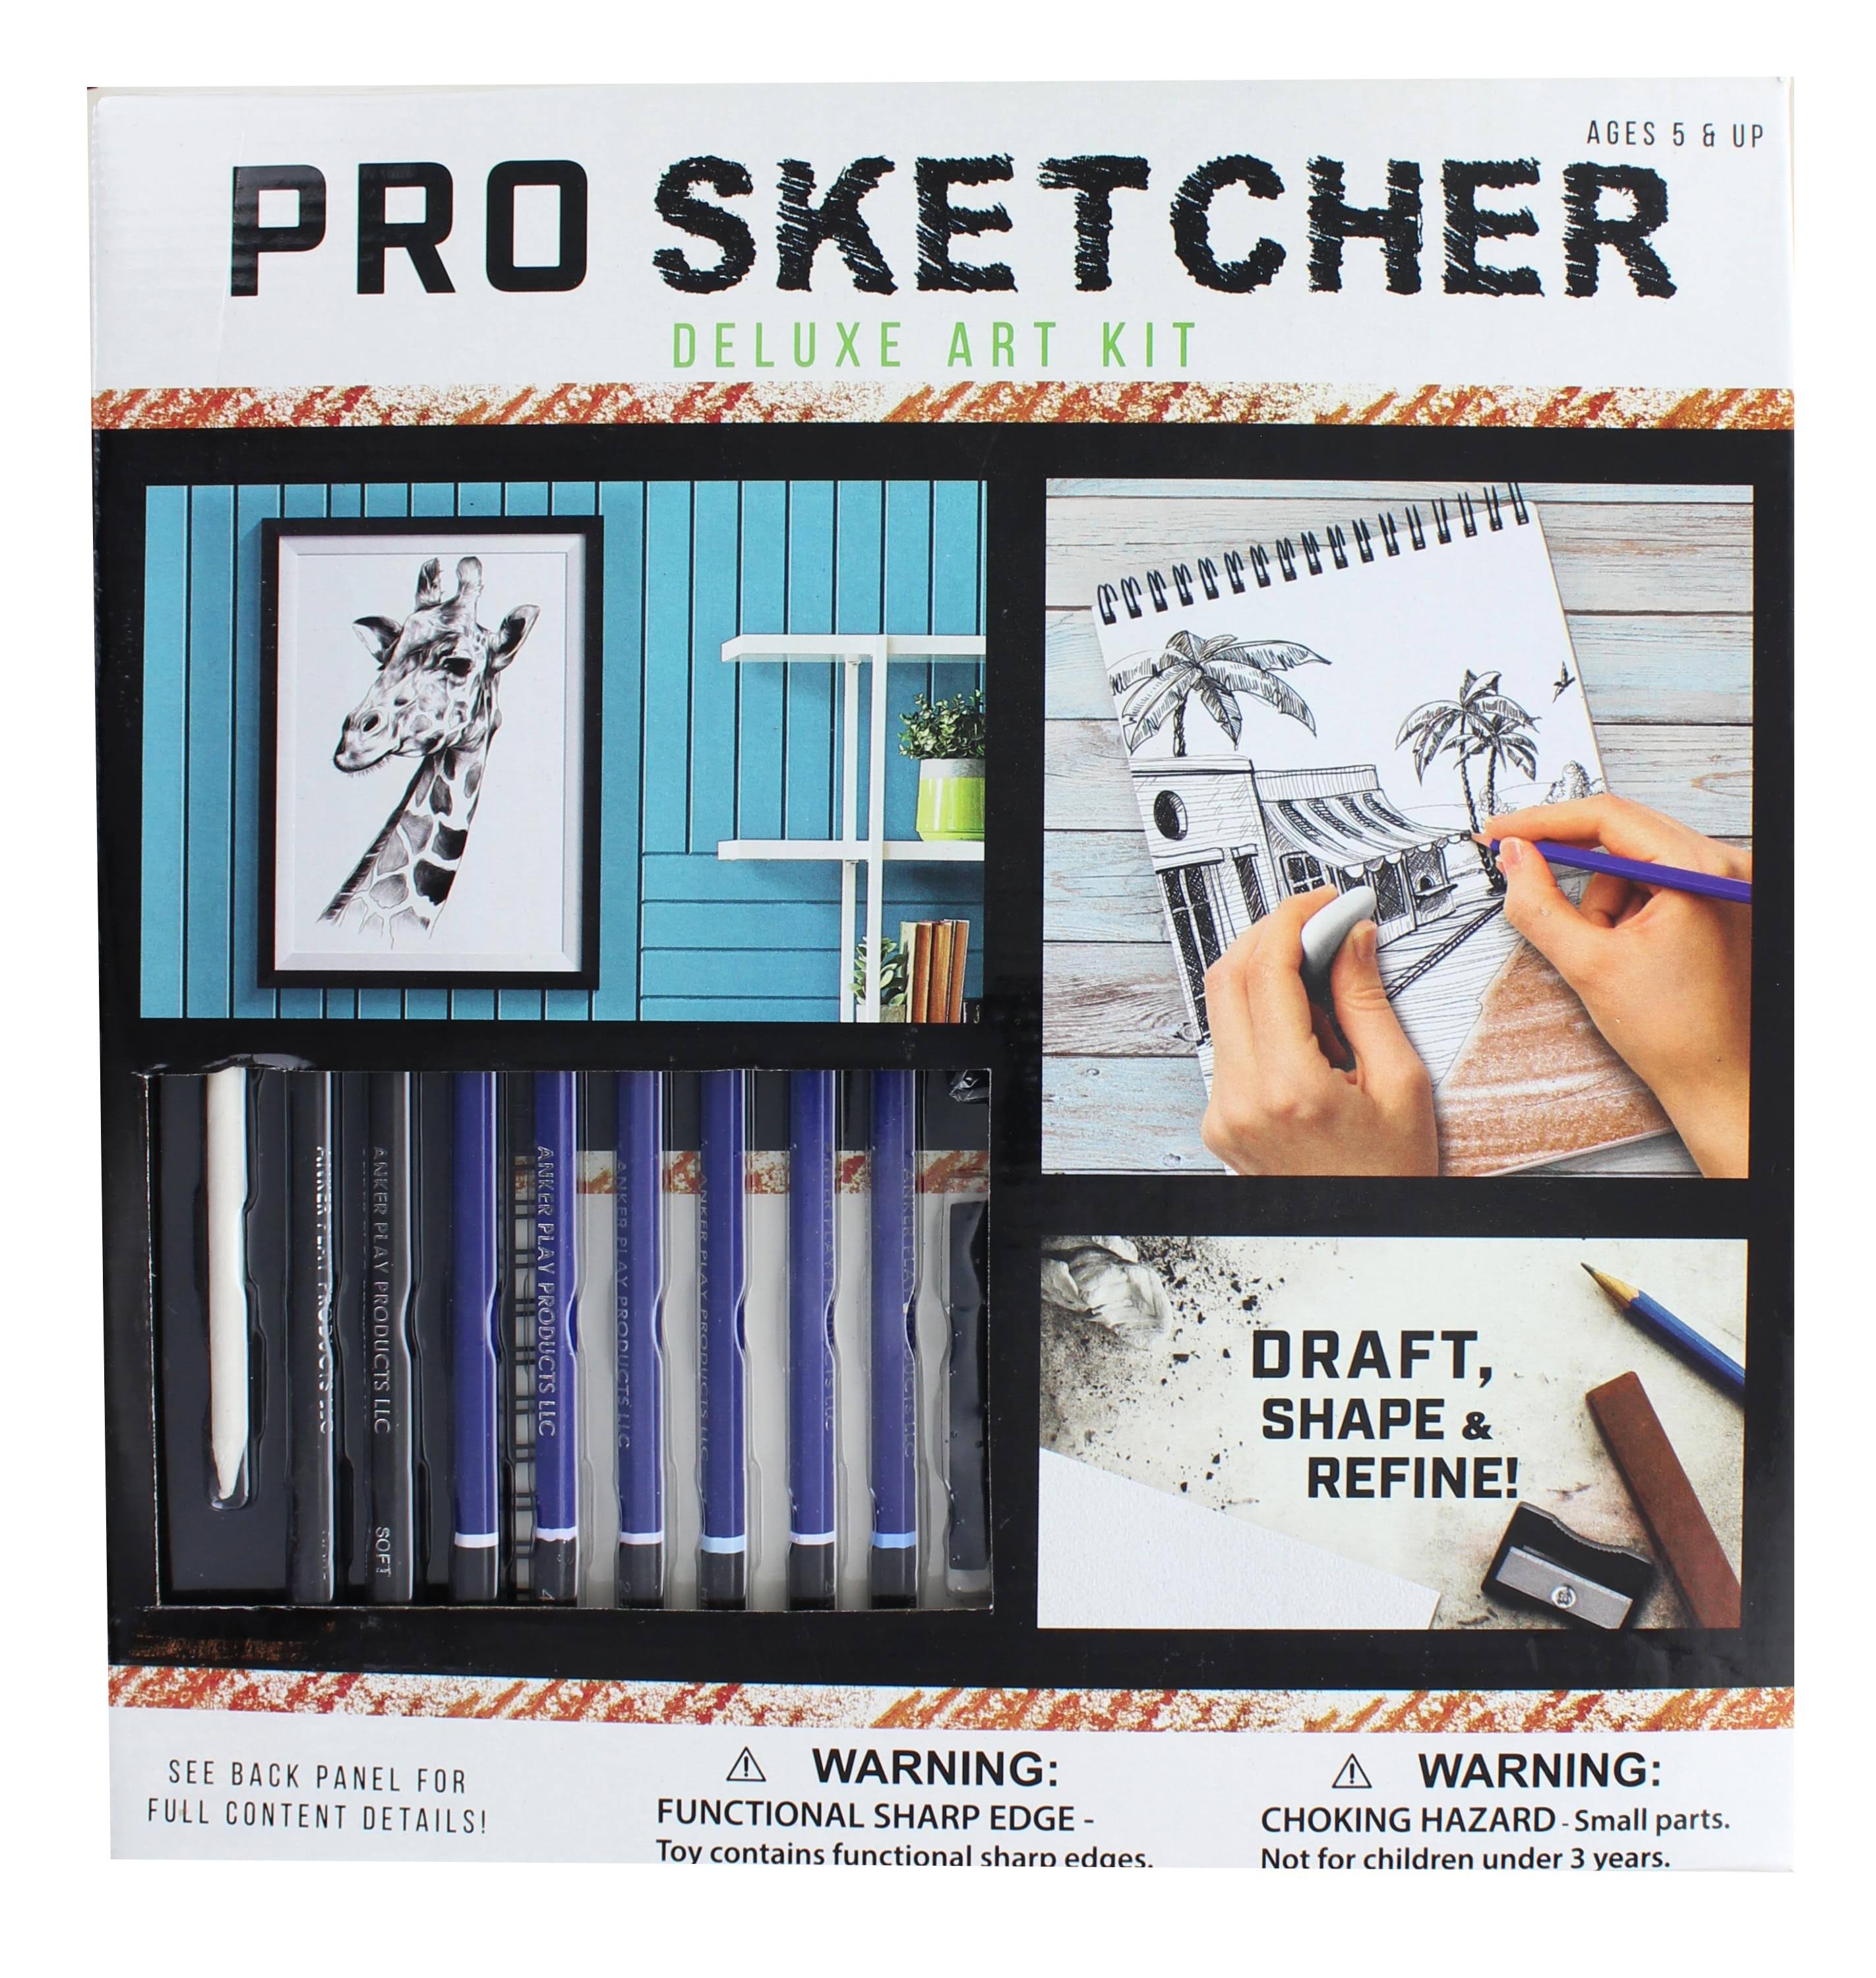 Anker Play Pro Sketcher Deluxe Art Kit